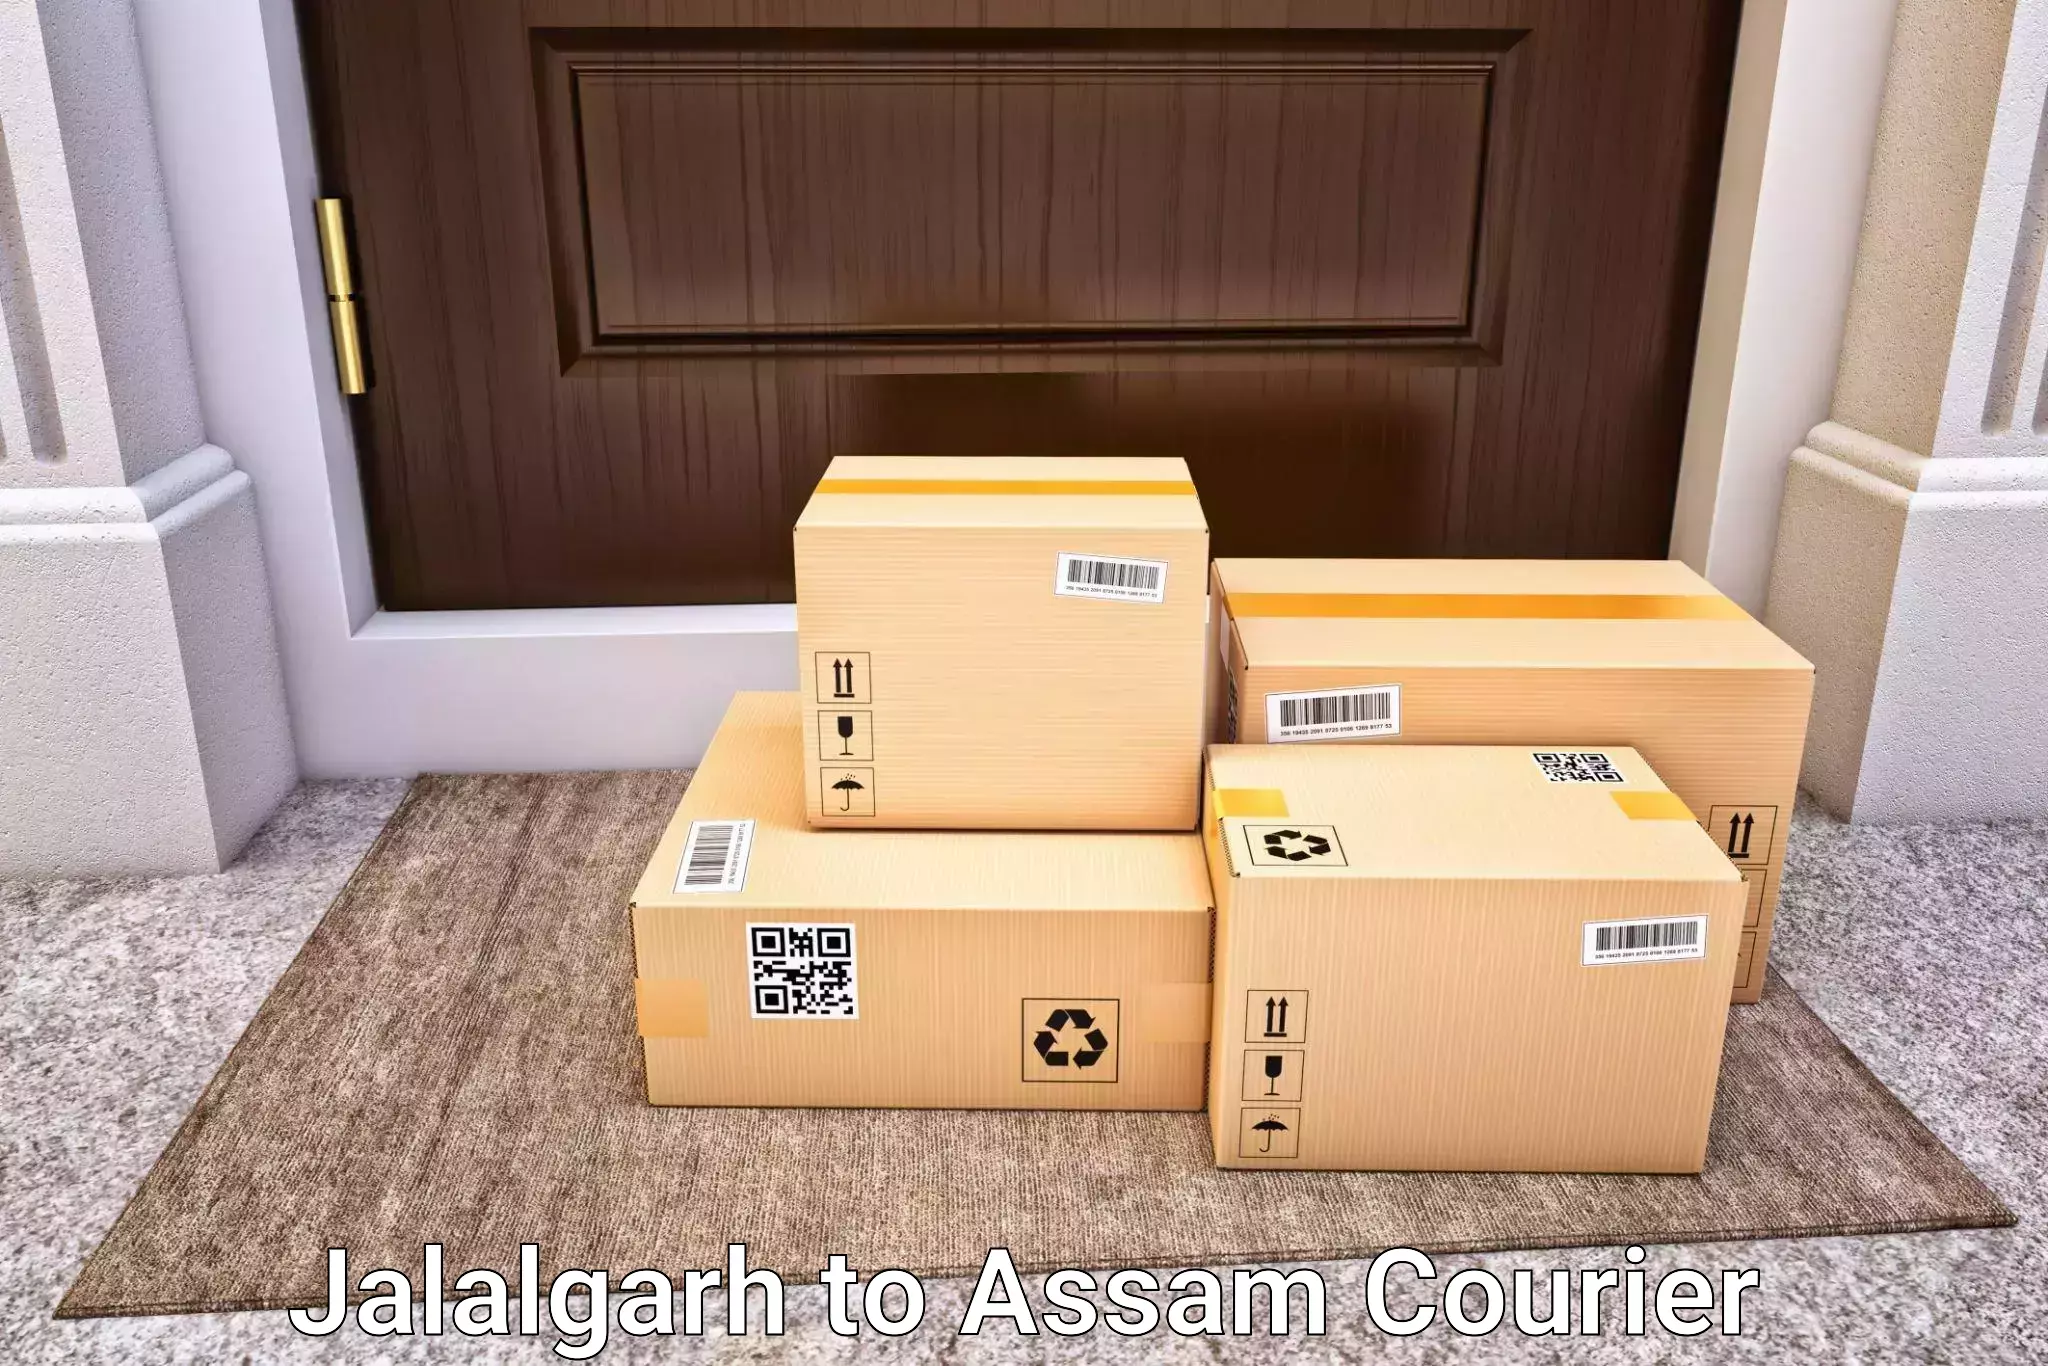 Hassle-free luggage shipping Jalalgarh to Agomani